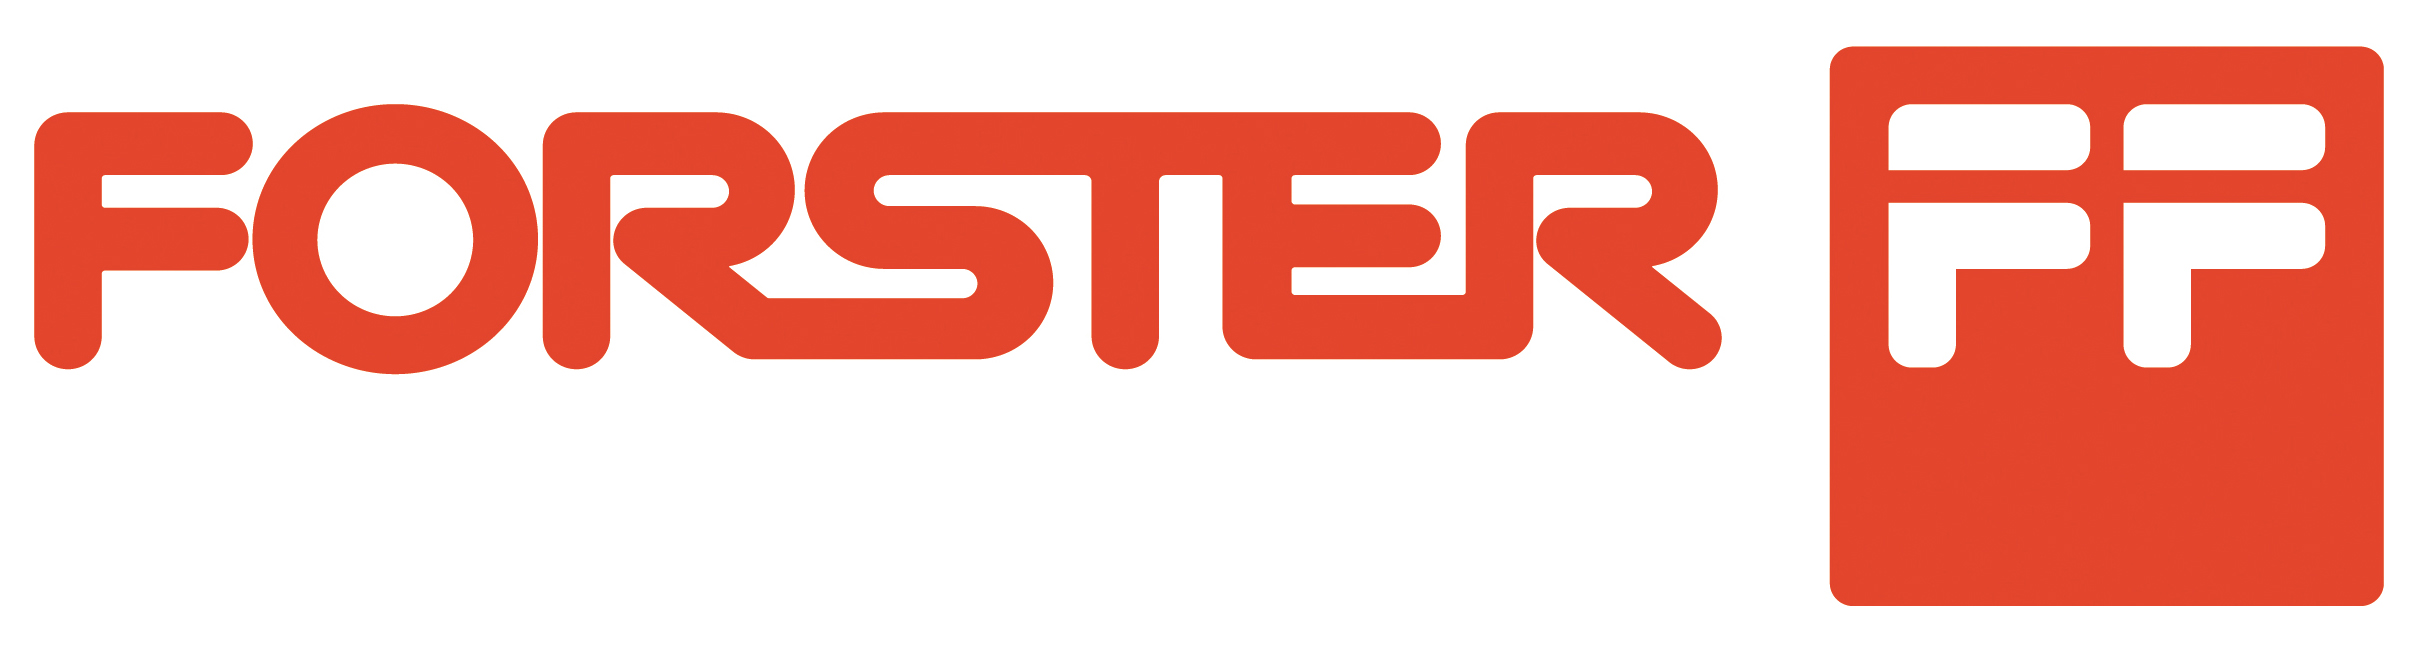 Forster Logo 4c